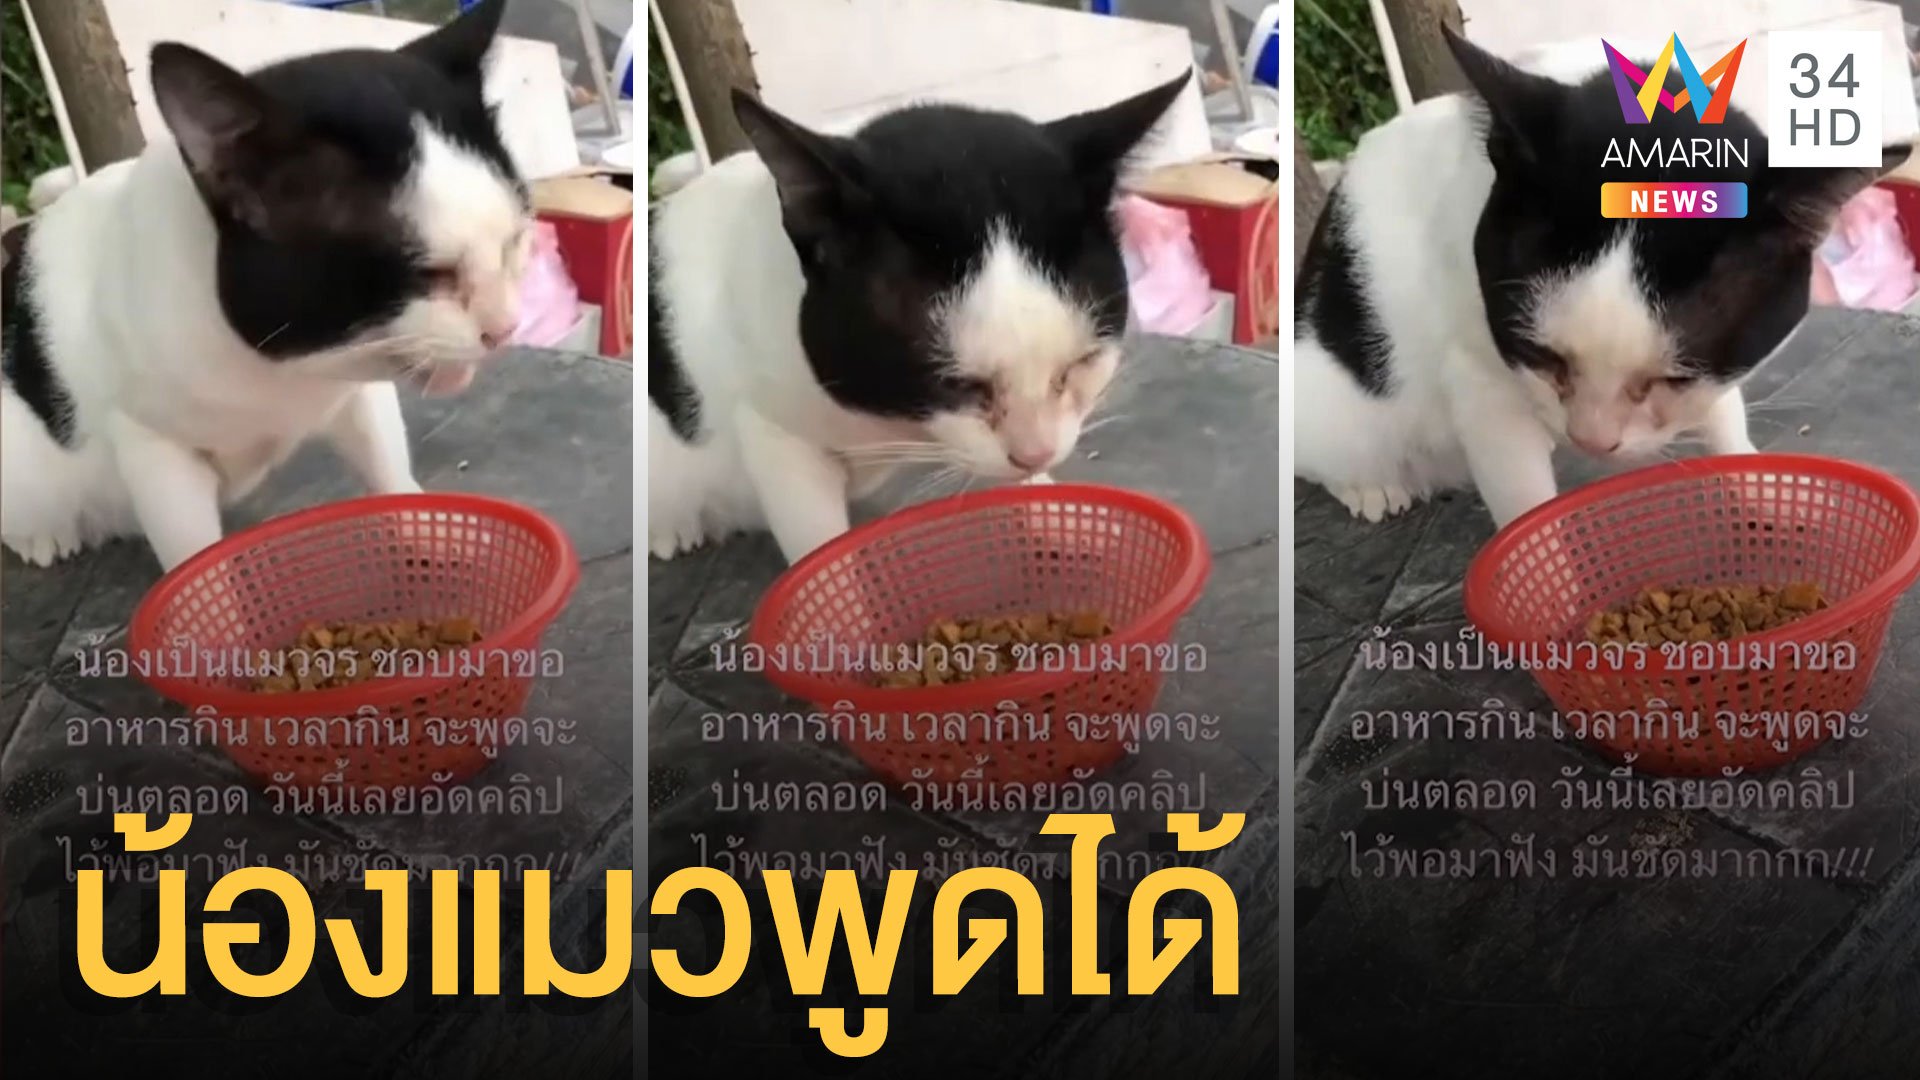 แมวจรพูดได้ กินอาหารถามคำตอบคำ | ข่าวอรุณอมรินทร์ | 14 ก.ย. 64 | AMARIN TVHD34